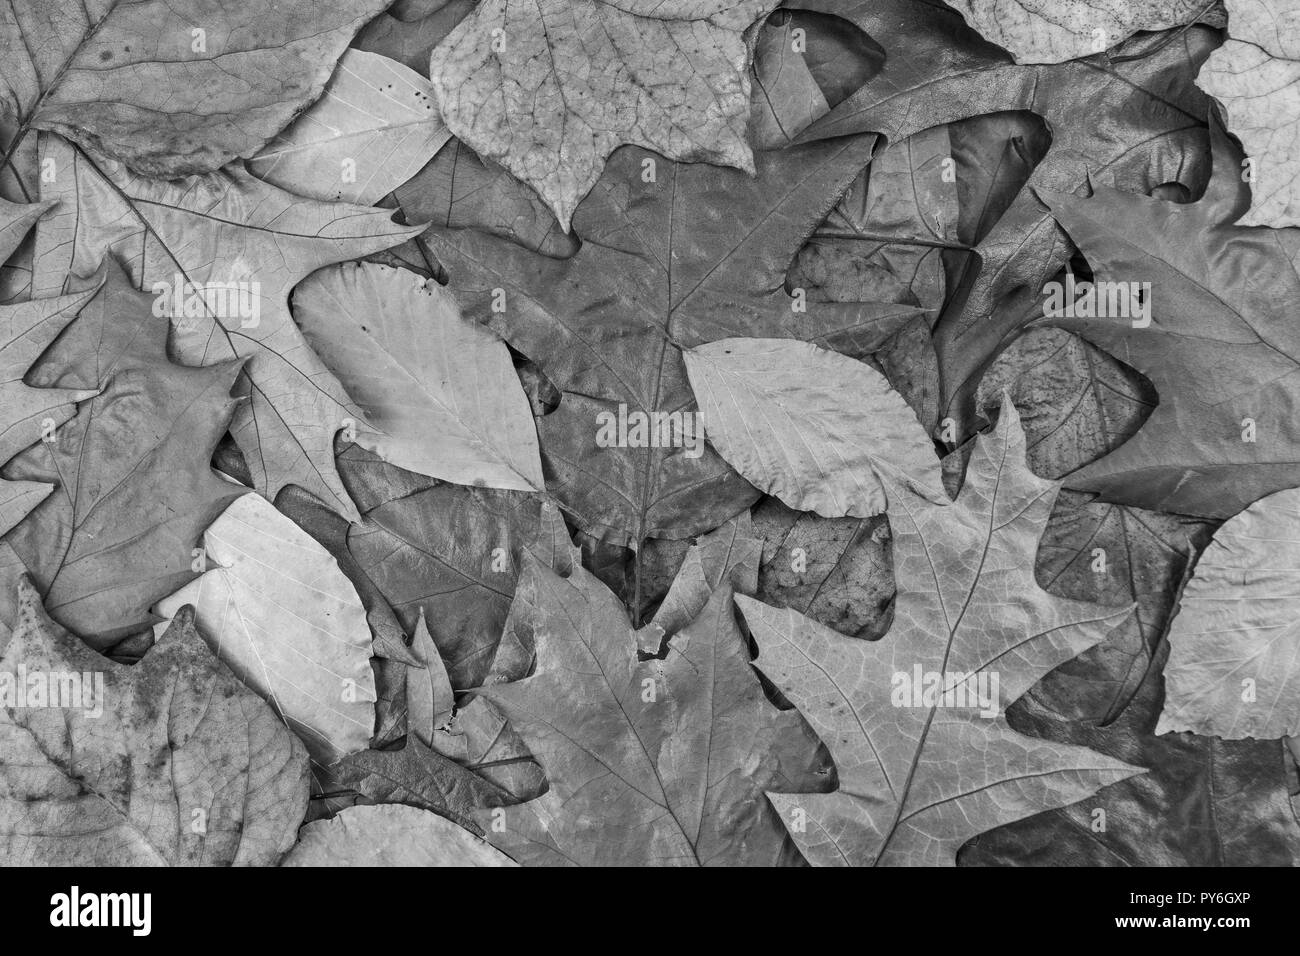 Les feuilles d'automne noir et blanc sur le terrain. De PY6EYJ. Ans, métaphore de l'automne la fin de la saison, la fin de la vie, la retraite, l'automne, les feuilles mortes, la litière Banque D'Images